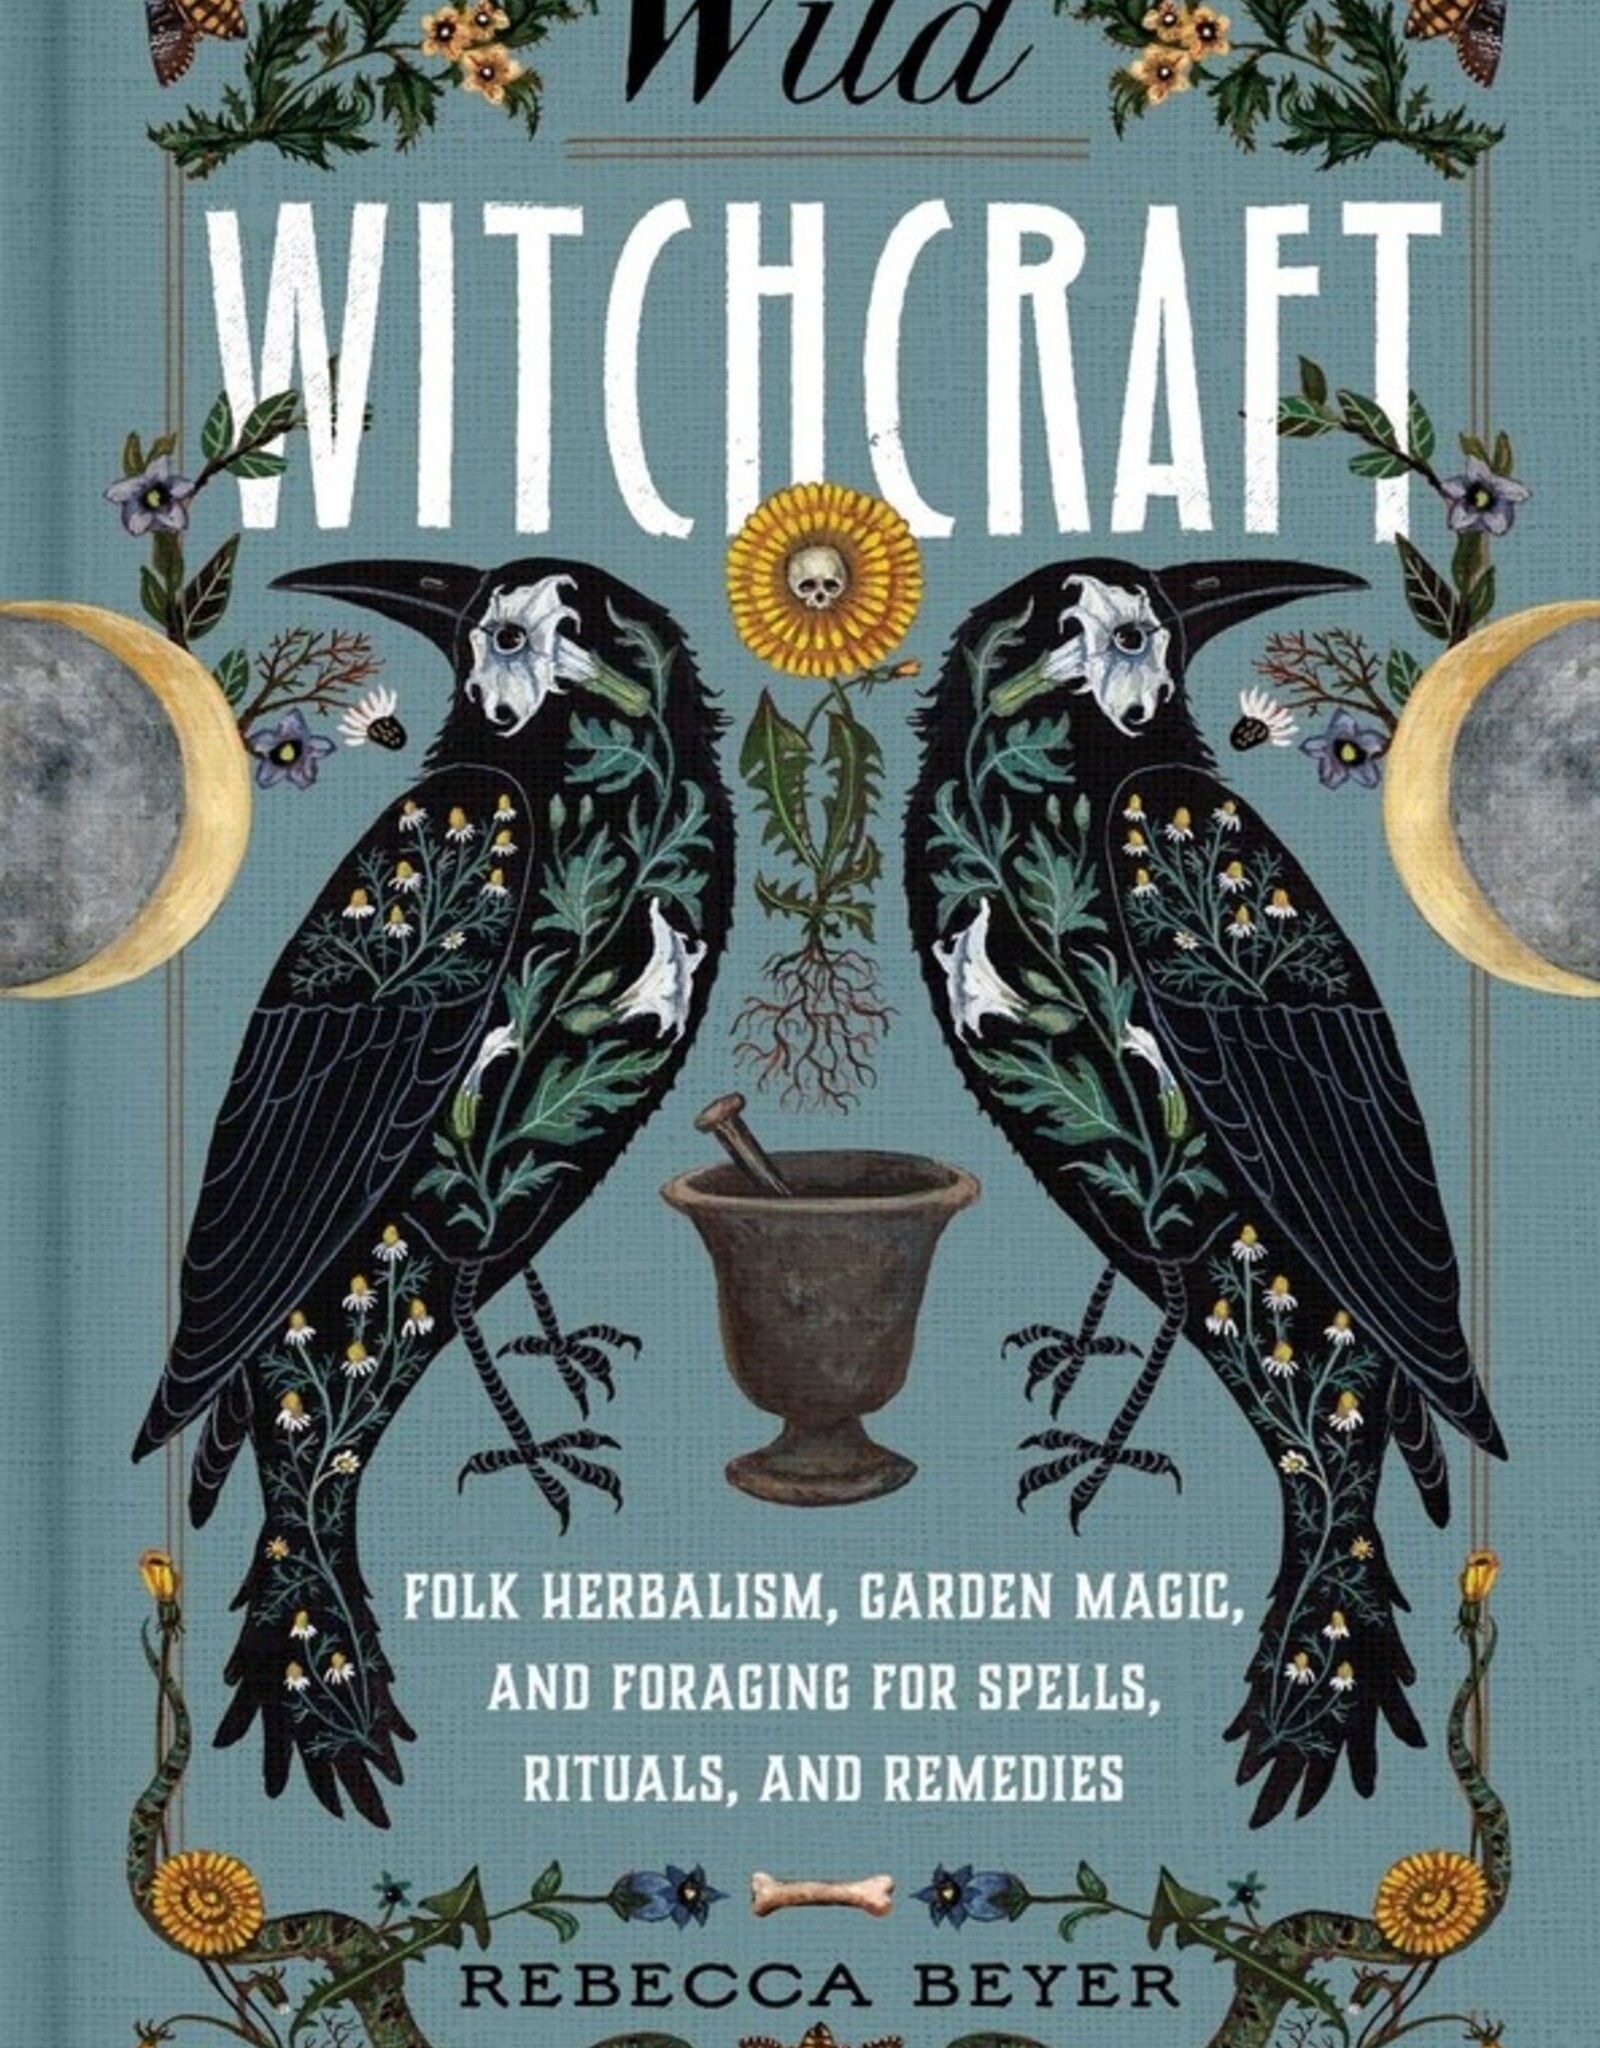 Simon & Schuster *Wild Witchcraft